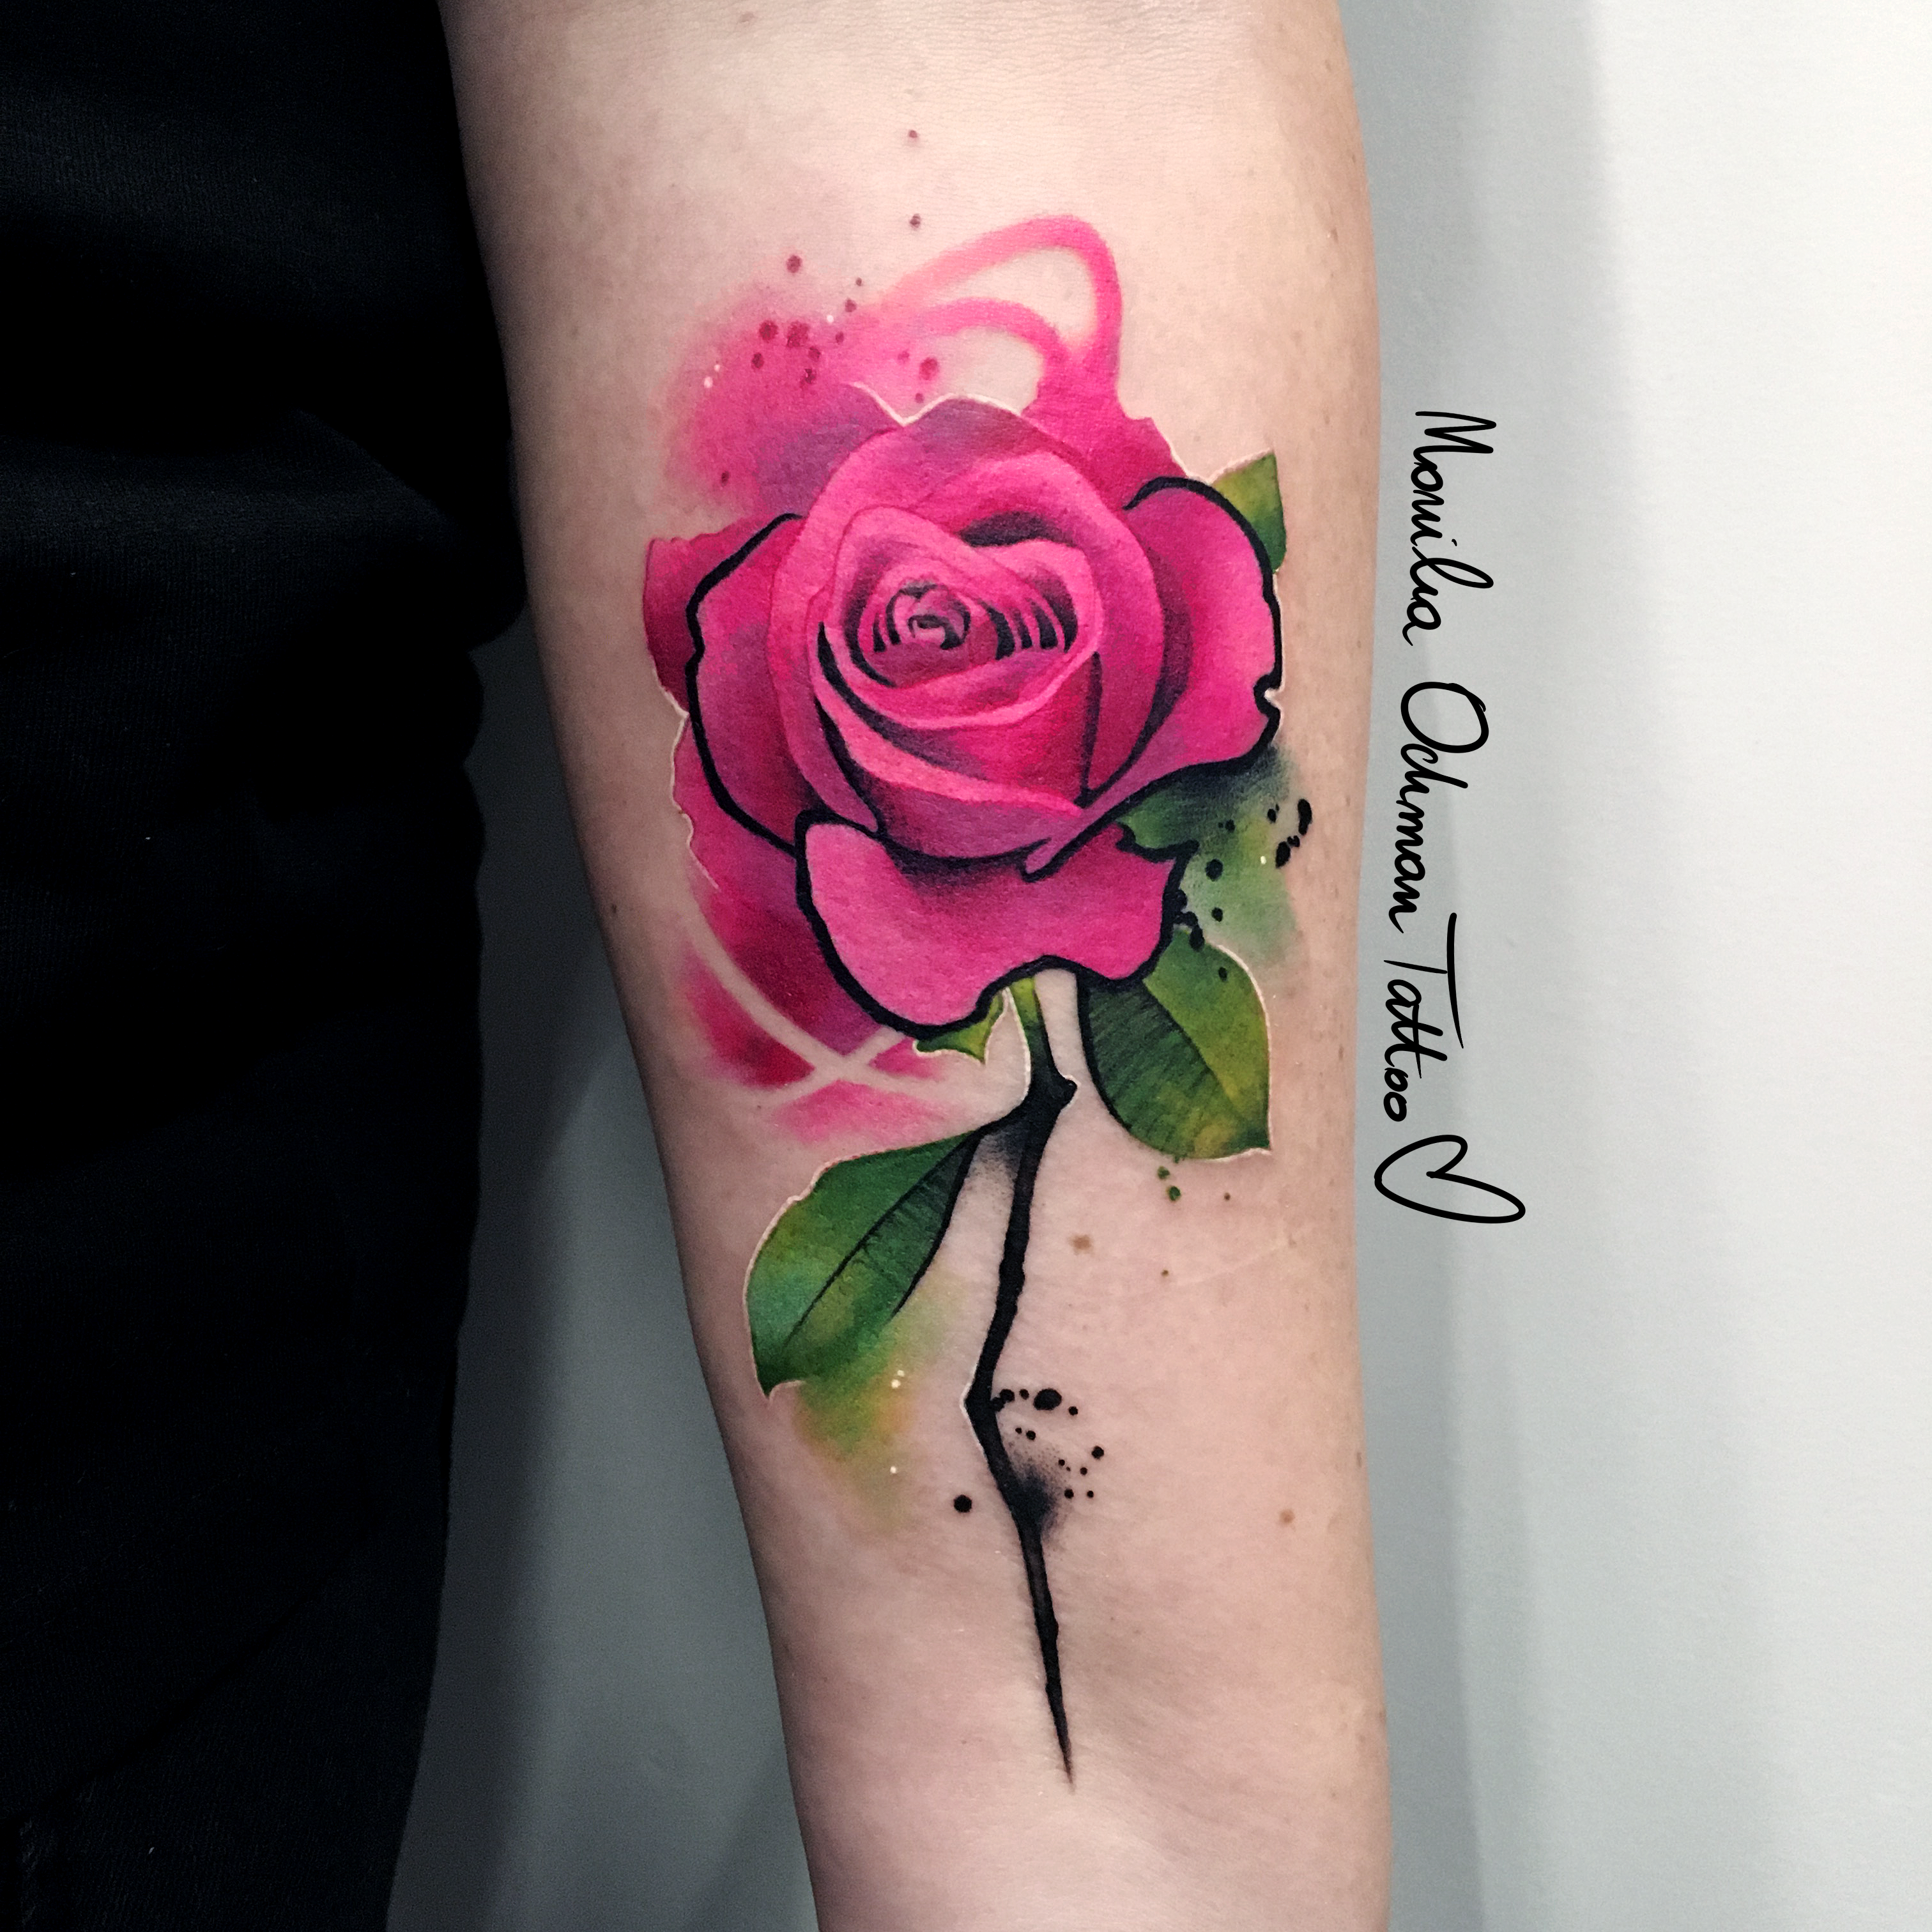 Tatuaż różowej róży z łodygą na przedramieniu